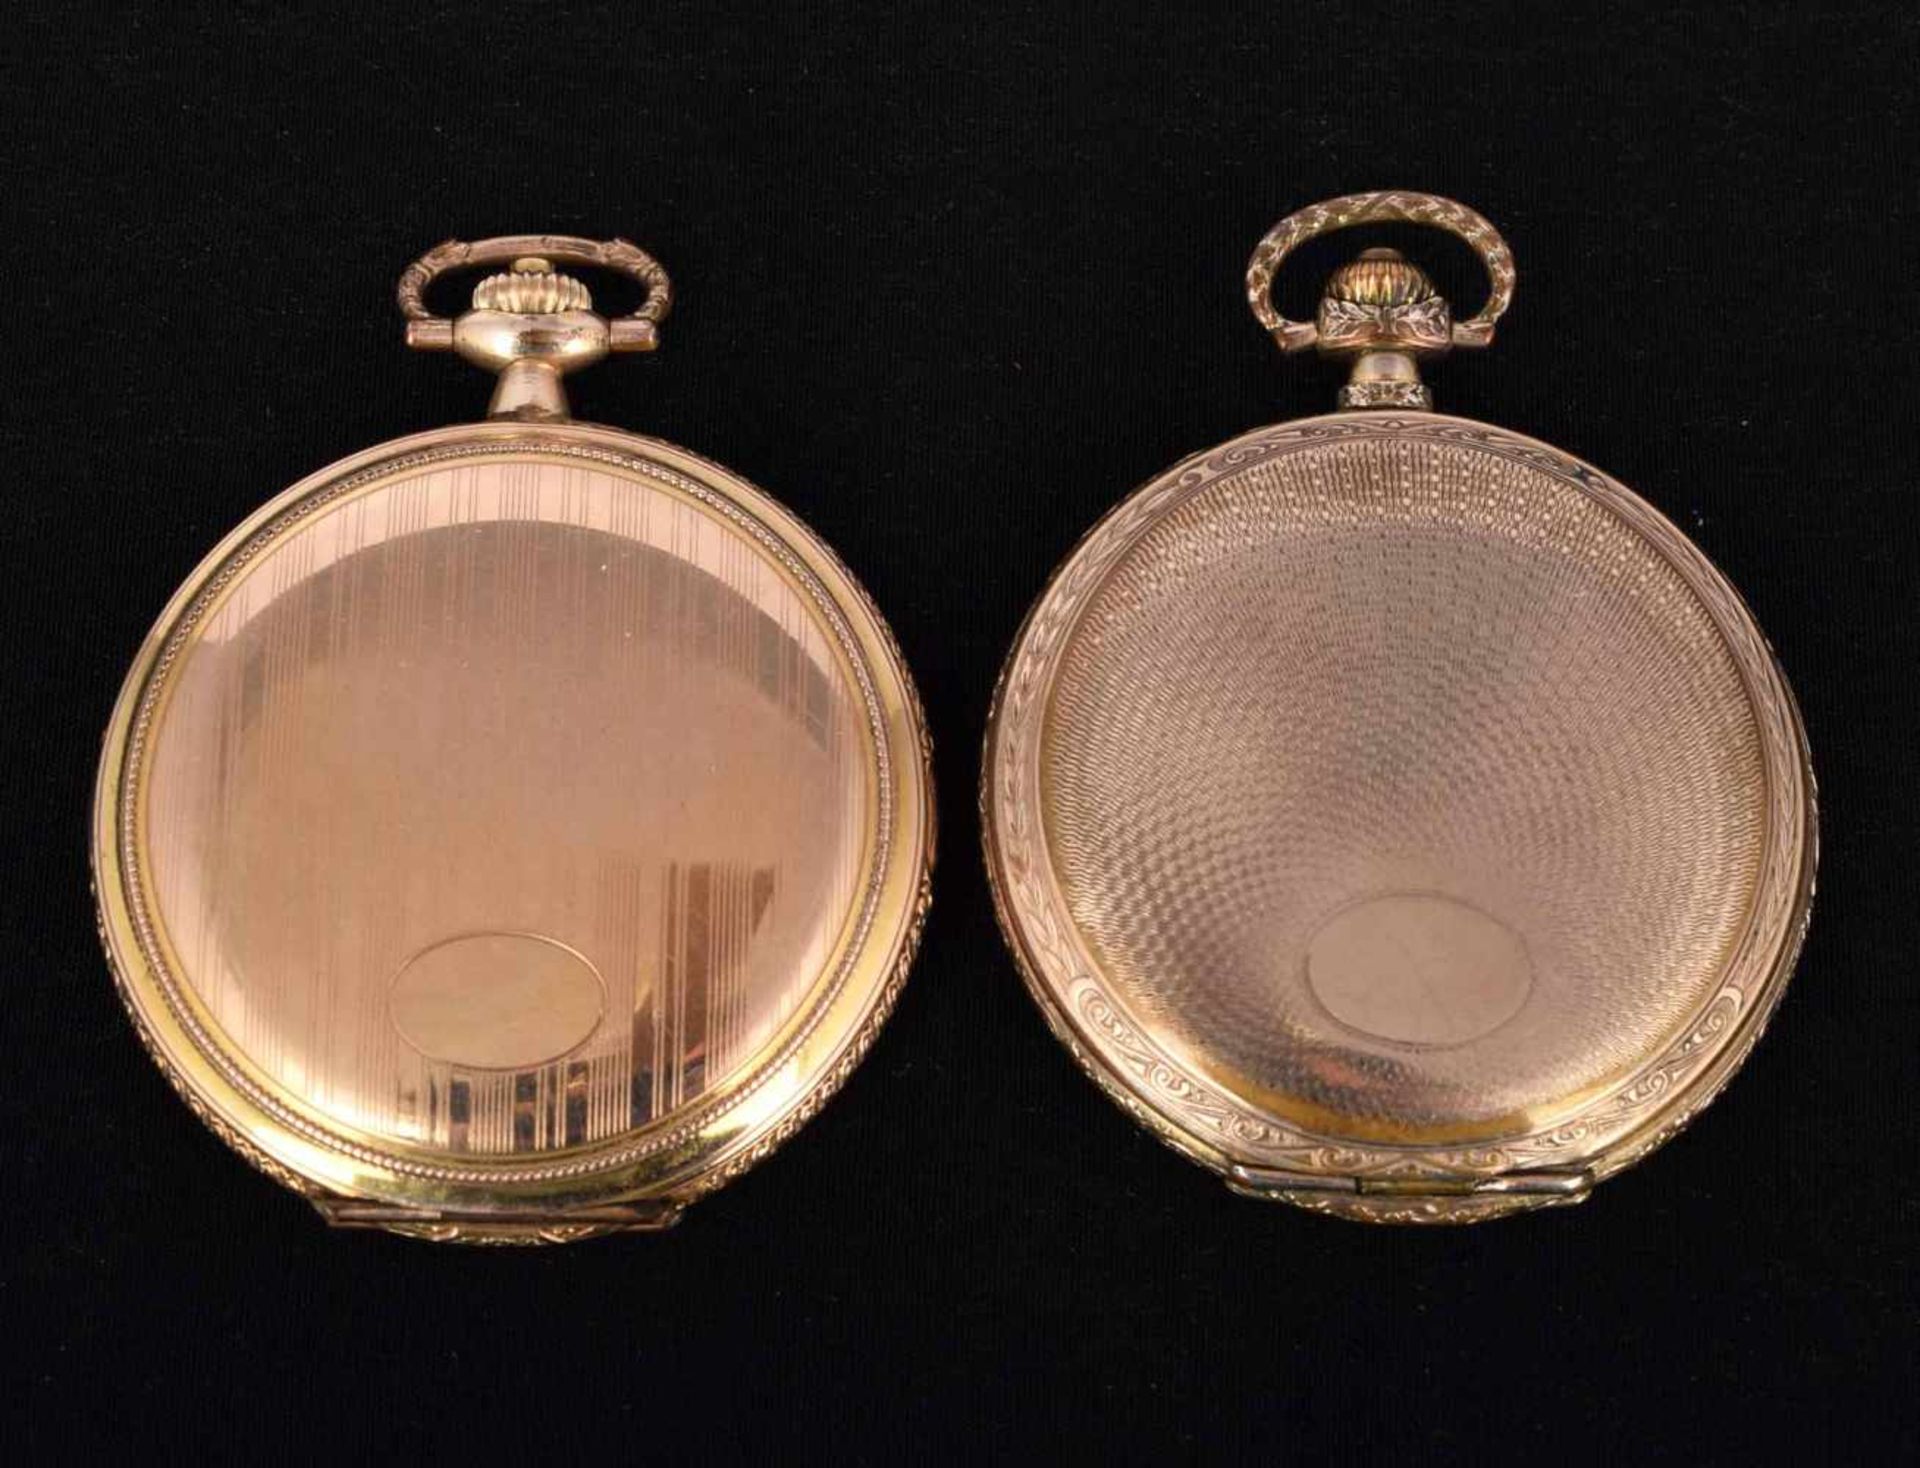 Zwei Sprungdeckeltaschenuhren Metallgehäuse vergoldet, untersch. Hersteller, Stunde, Minute und - Bild 3 aus 3